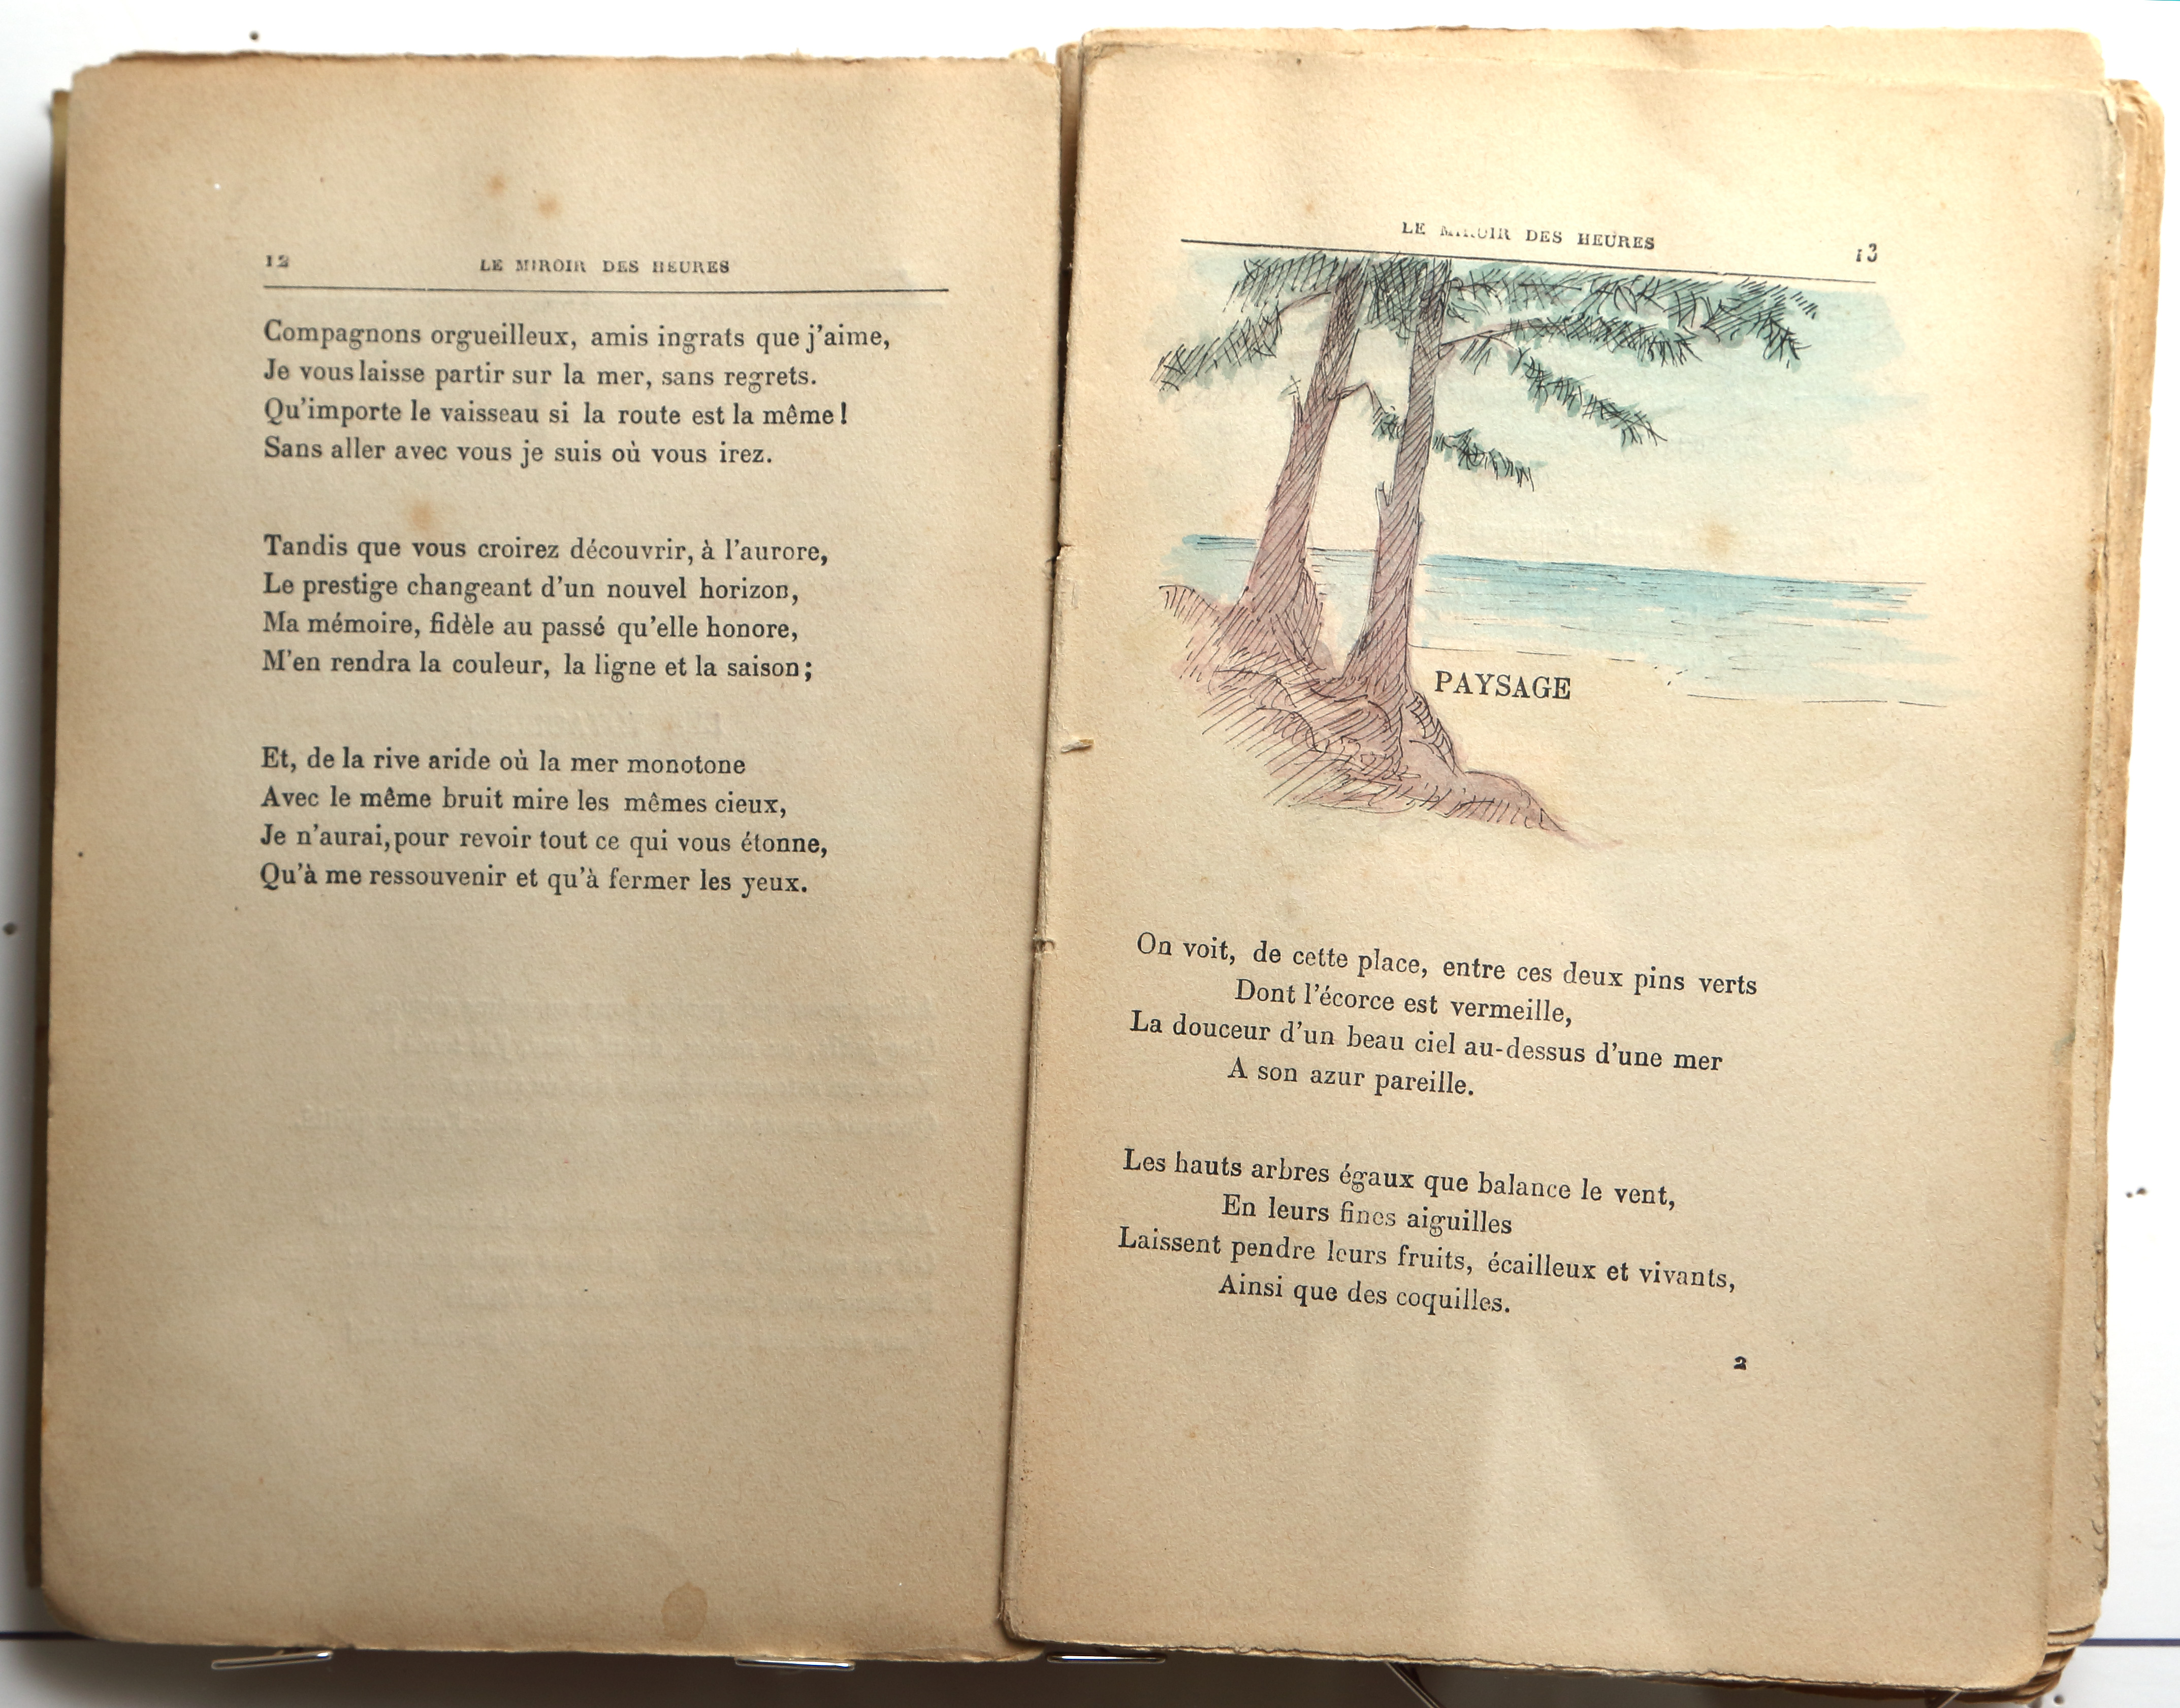 Pages 12–13.  Le Miroir des Heures, illustrations.  Jean Charlot.